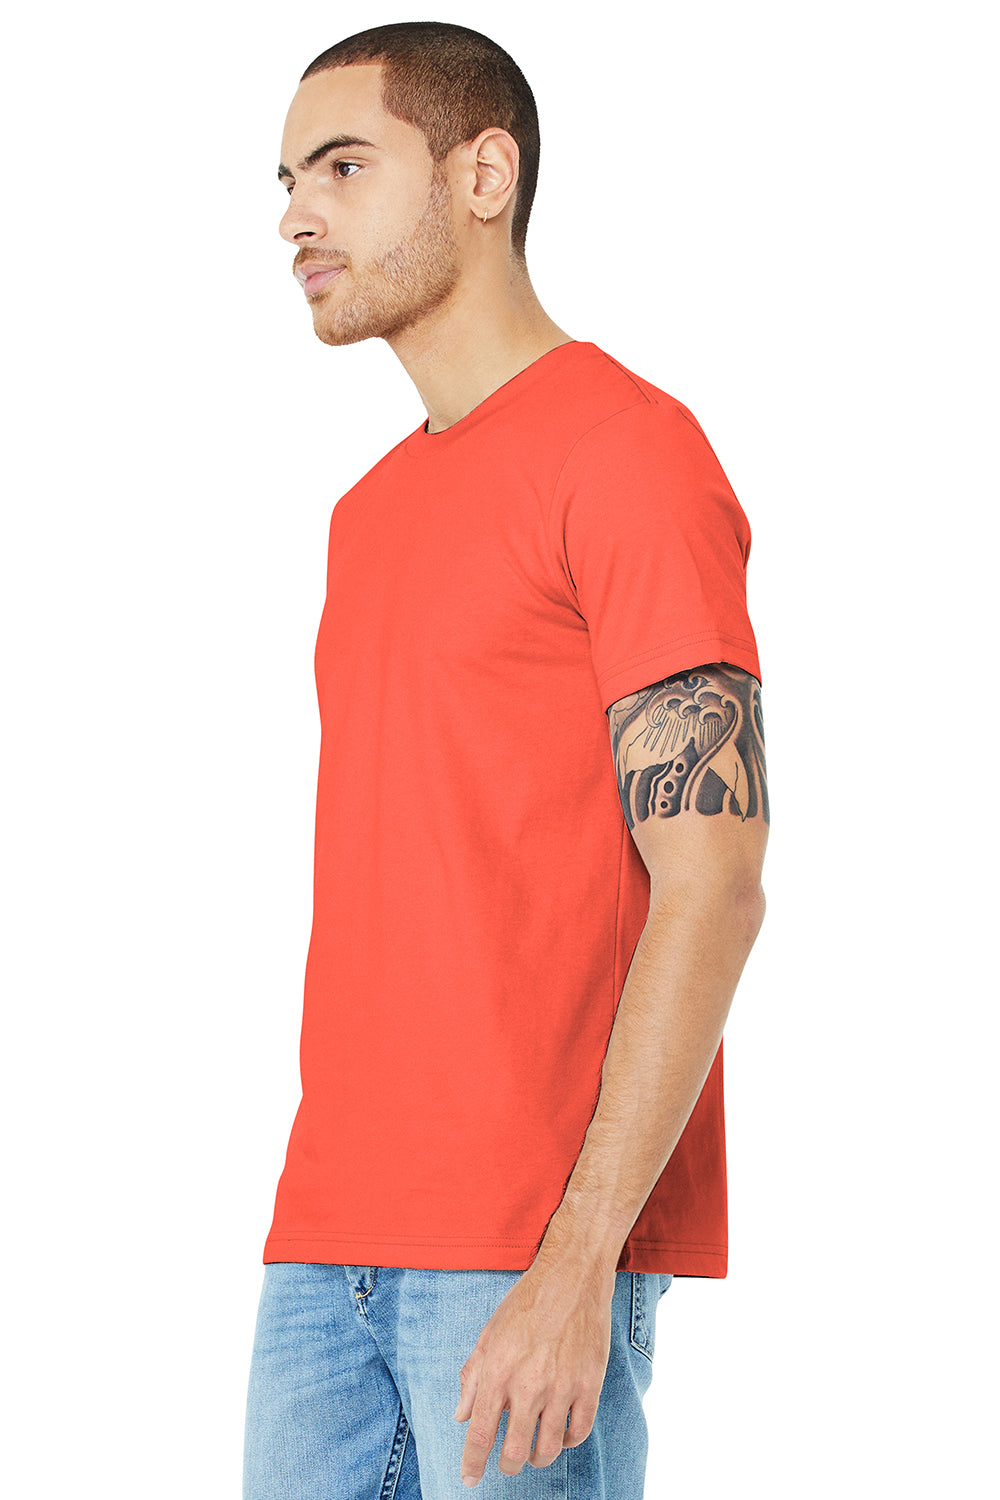 Bella + Canvas BC3001/3001C Mens Jersey Short Sleeve Crewneck T-Shirt Coral Model 3Q